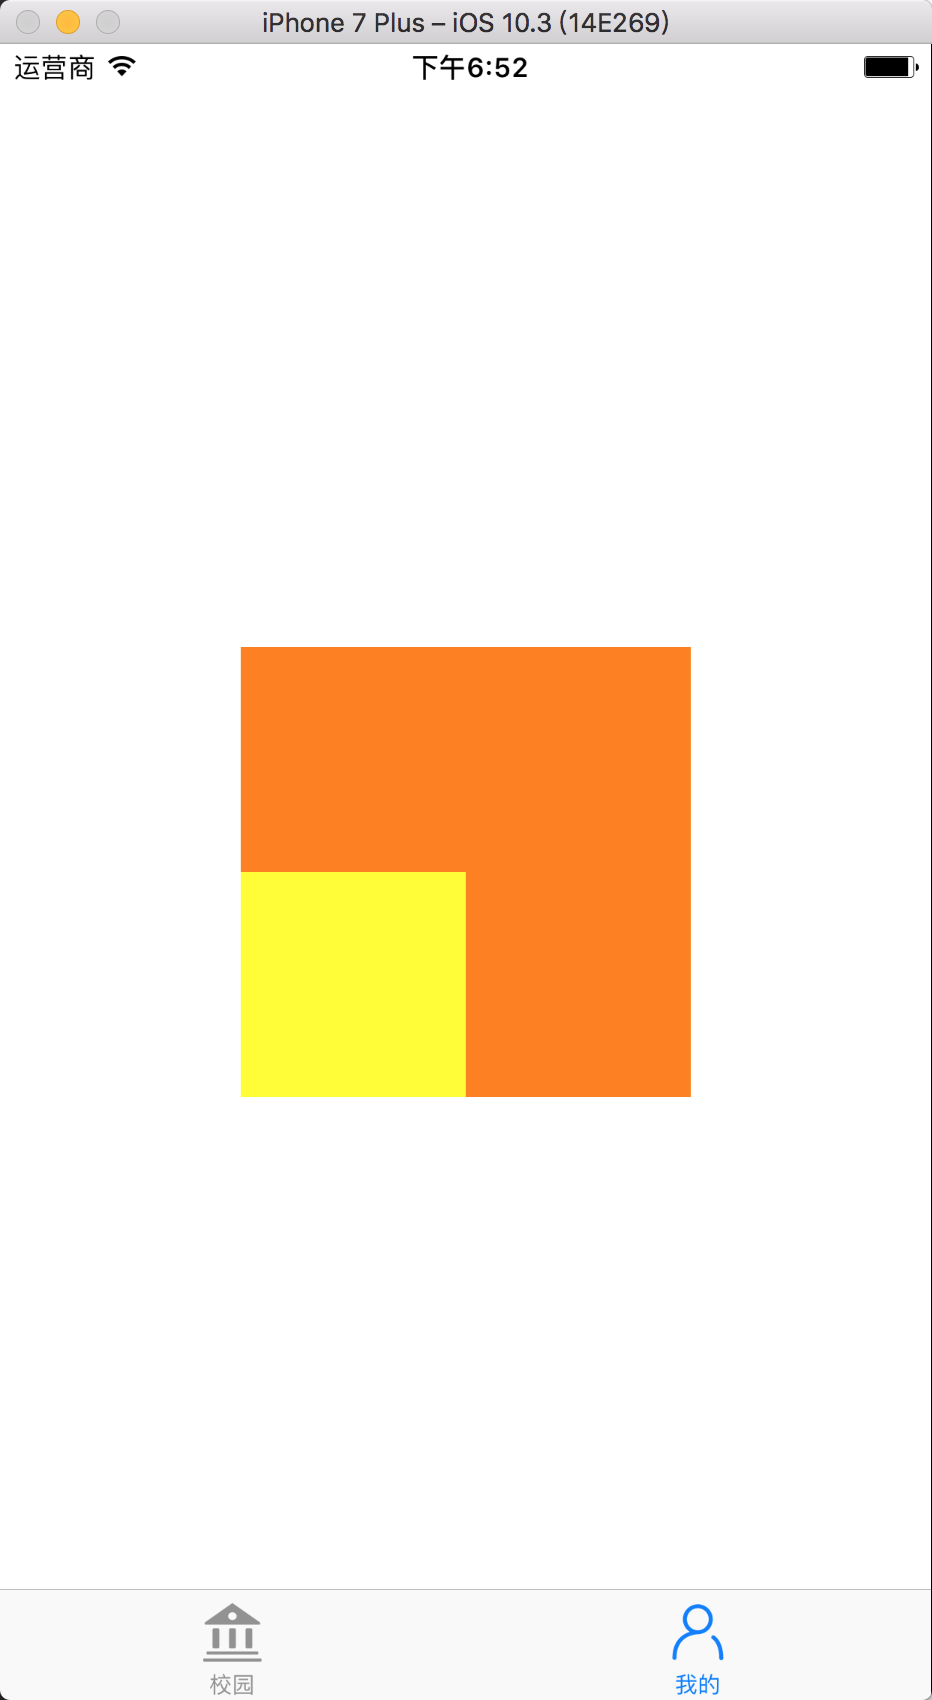 黄色方块放置橙色方块内部的左下角位置